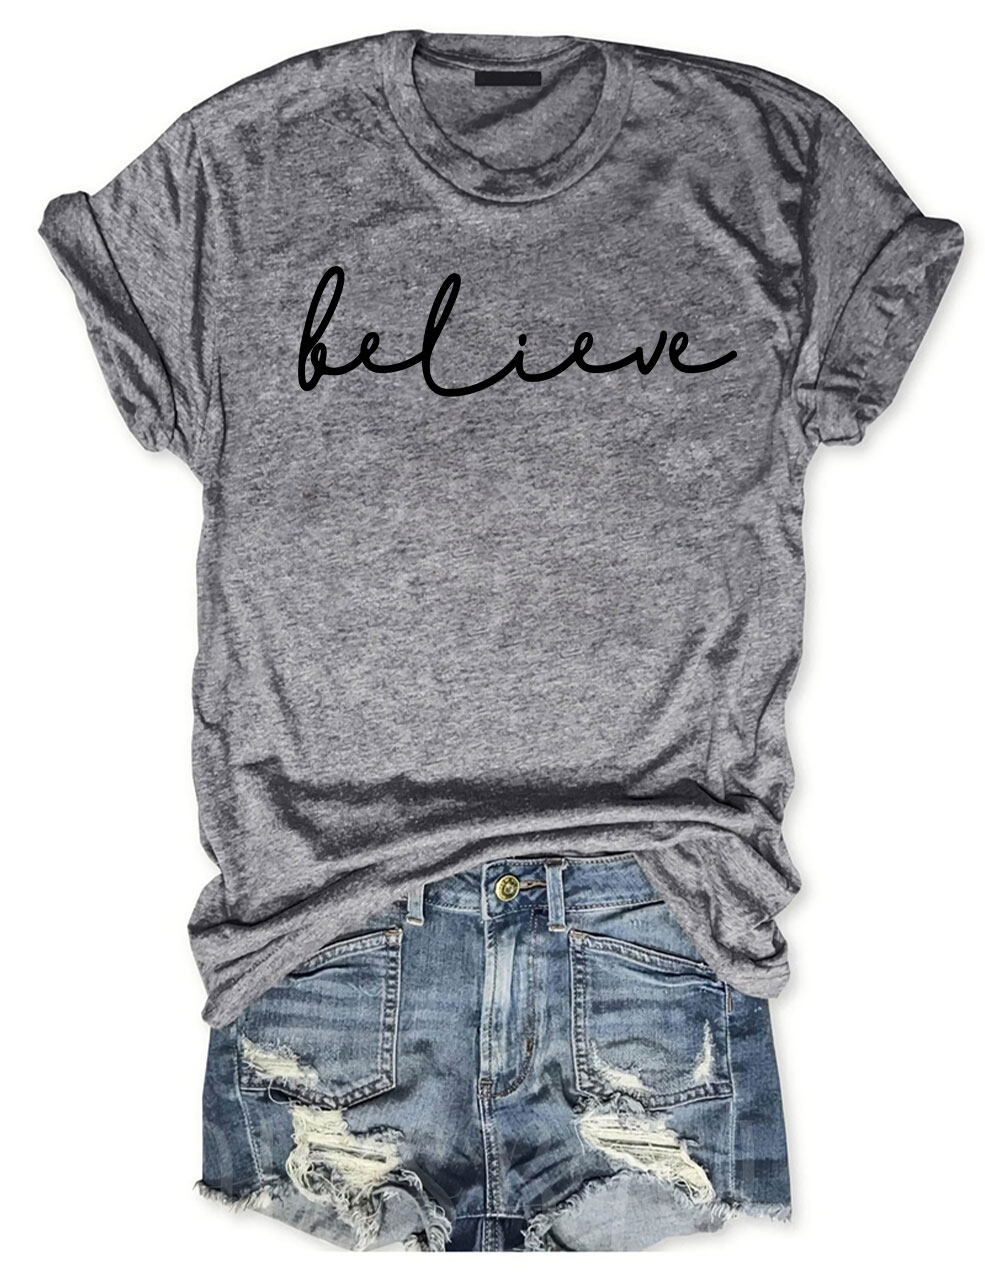 Believe T-shirt